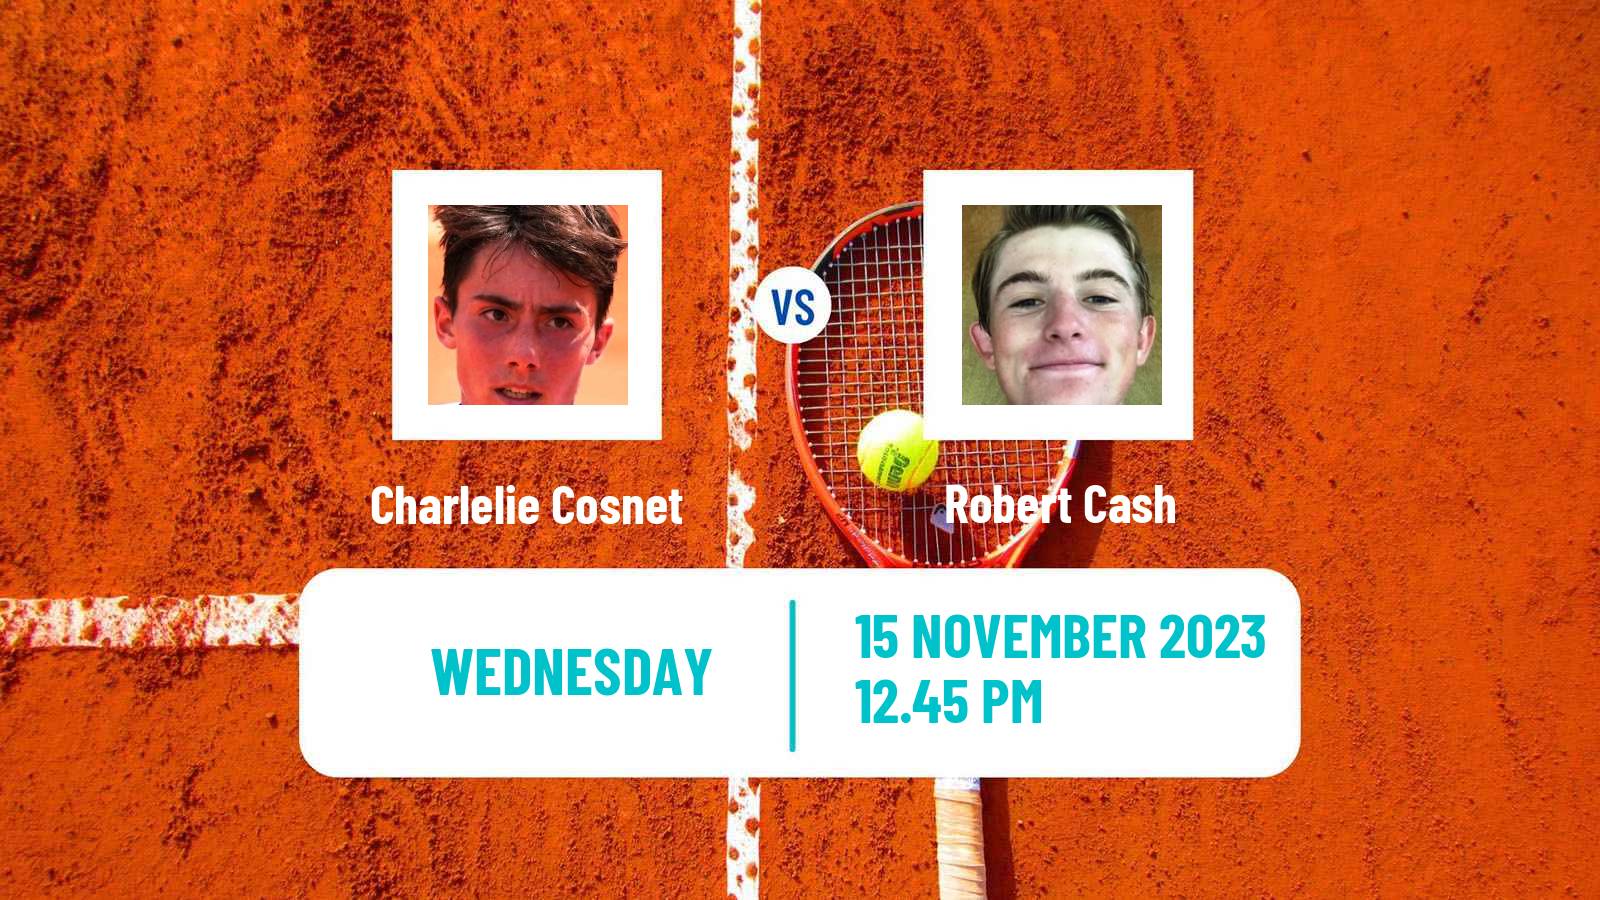 Tennis ITF M25 Columbus Oh Men Charlelie Cosnet - Robert Cash